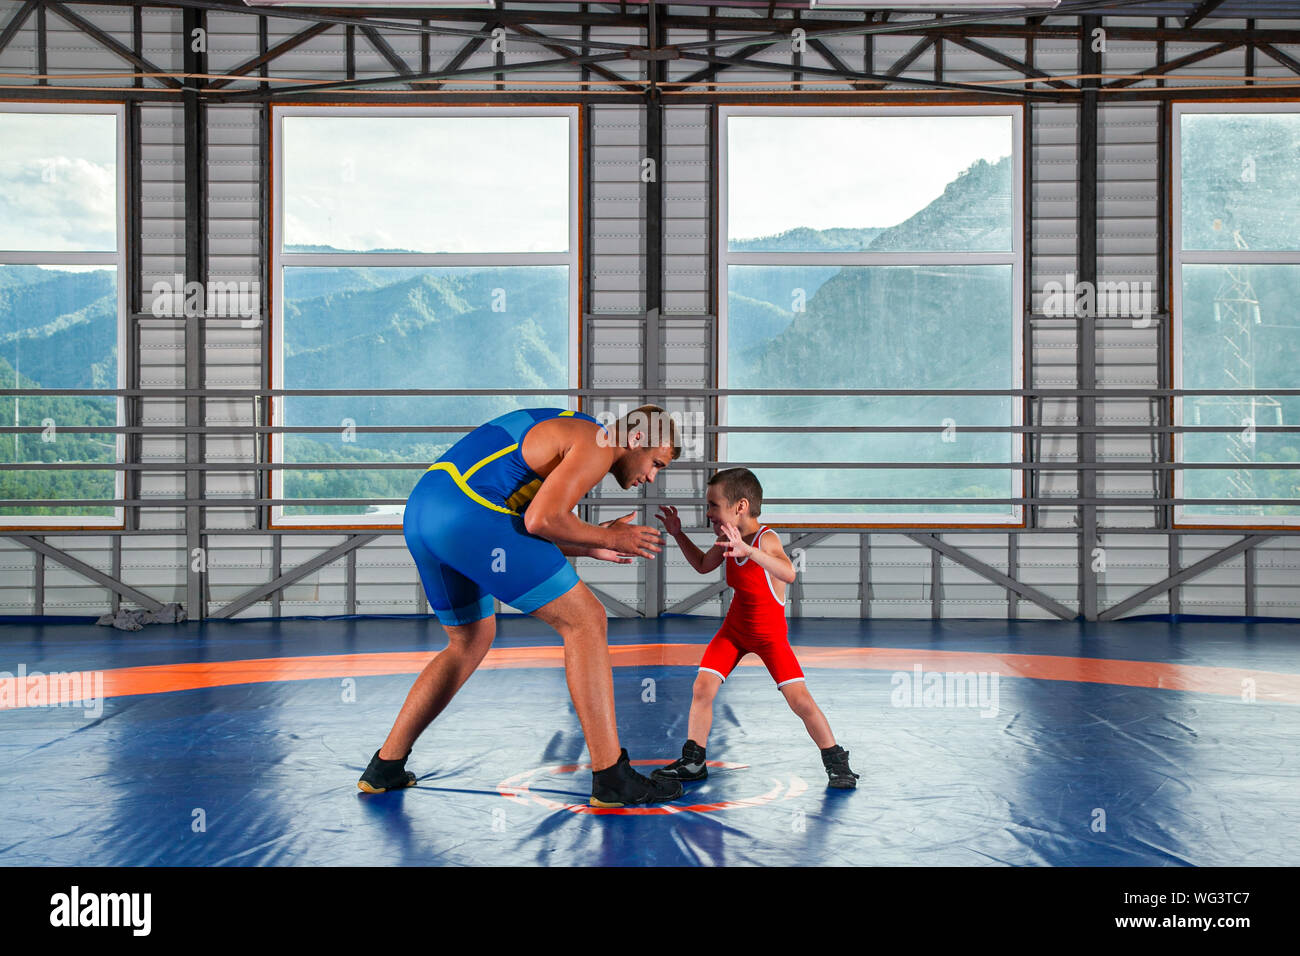 Un petit garçon dans un lutteur-sports se débat avec un homme adulte wrestler sur un tapis de lutte dans la salle de sport. Le concept de l'alimentation de l'enfant et martial Banque D'Images